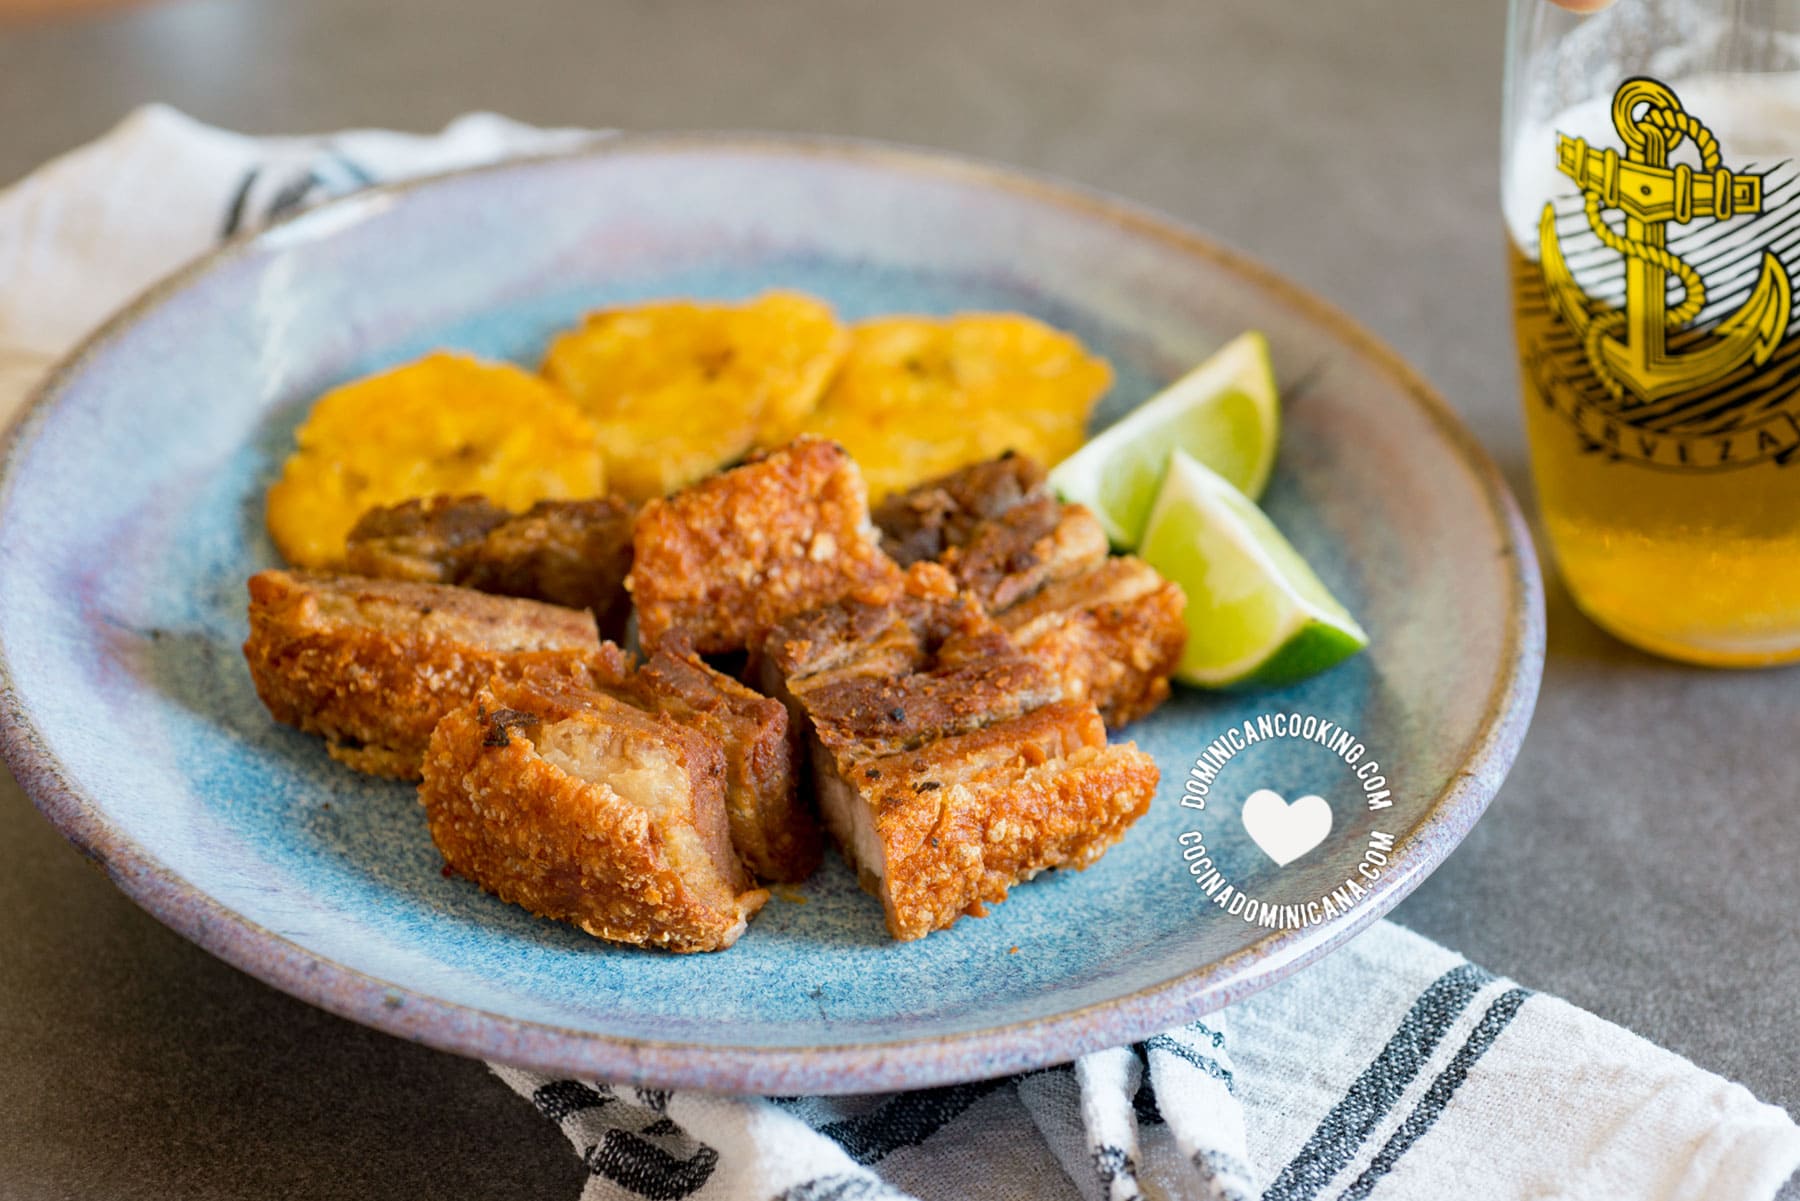 Chicharrón de Cerdo (Dominican Pork Crackling)